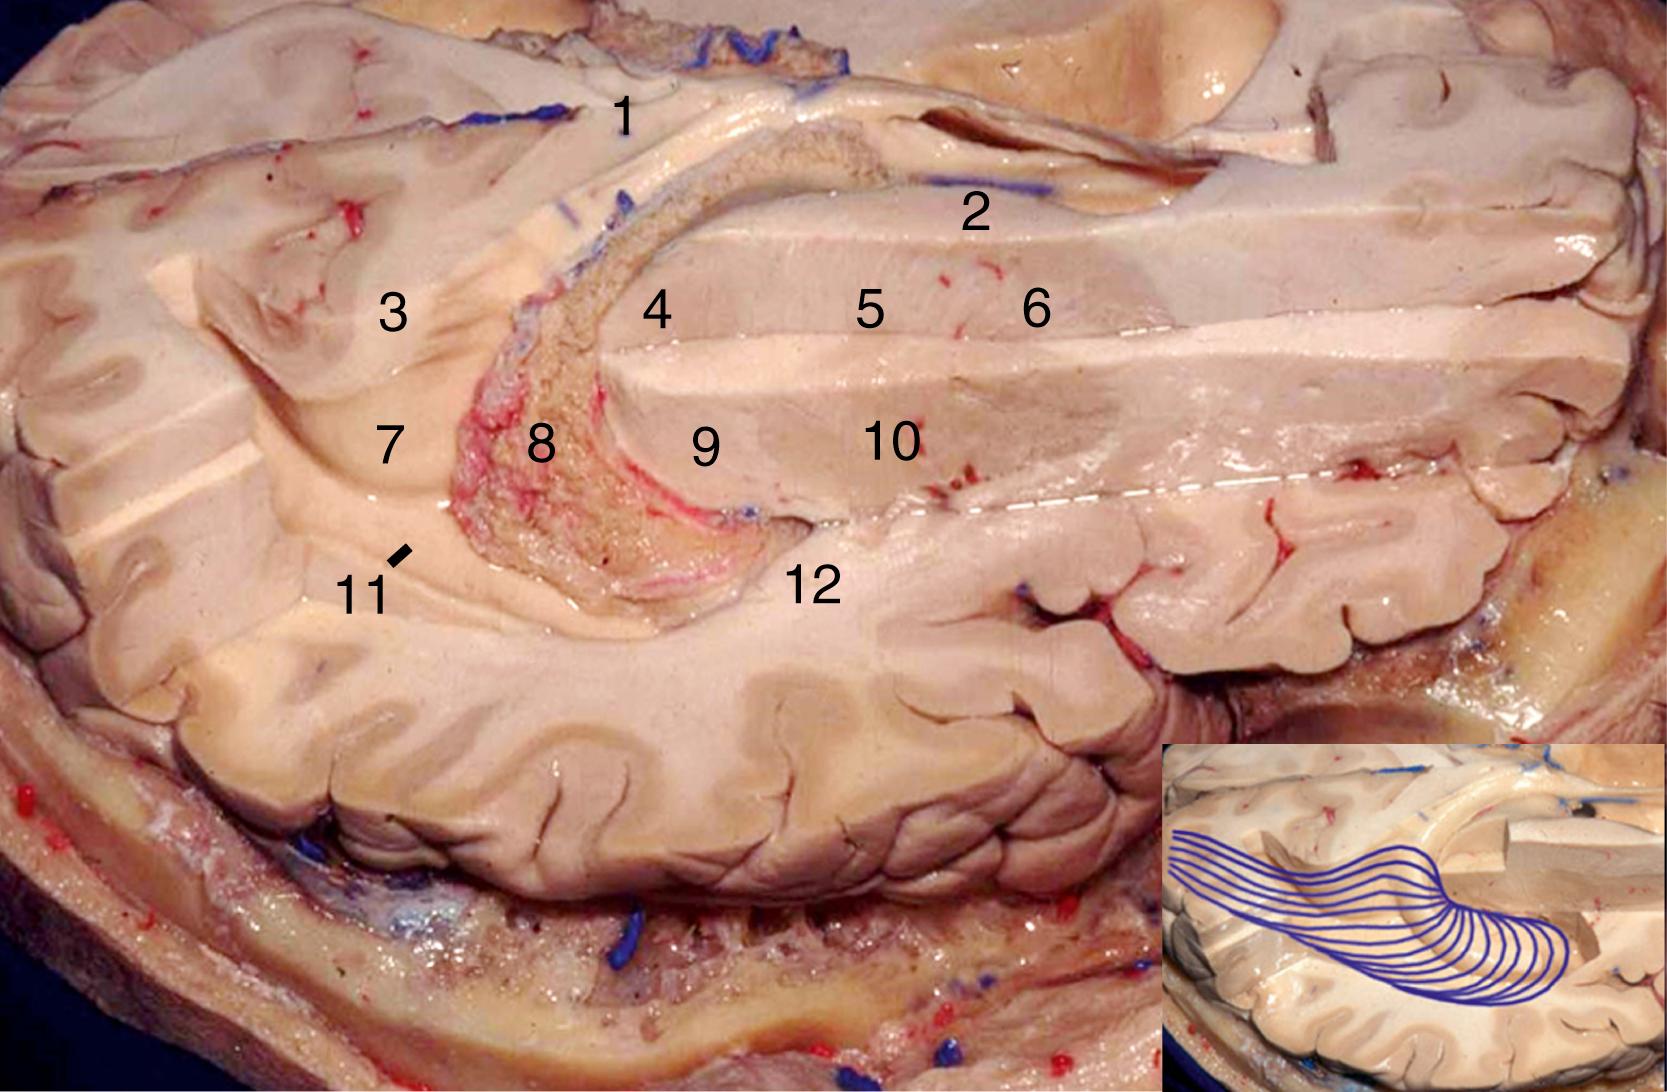 Figure 2.11, Superolateral view of the right hemisphere. 1, Splenium of corpus callosum; 2, head of caudate nucleus; 3, bulb of callosum; 4, thalamus; 5, genu of internal capsule; 6, anterior limb of internal capsule; 7, calcar avis; 8, choroid plexus; 9, retrolentiform part of internal capsule; 10, lentiform nucleus; 11, tail of hippocampus; 12, sublentiform part of internal capsule. Inset, Fibers of optic radiation.